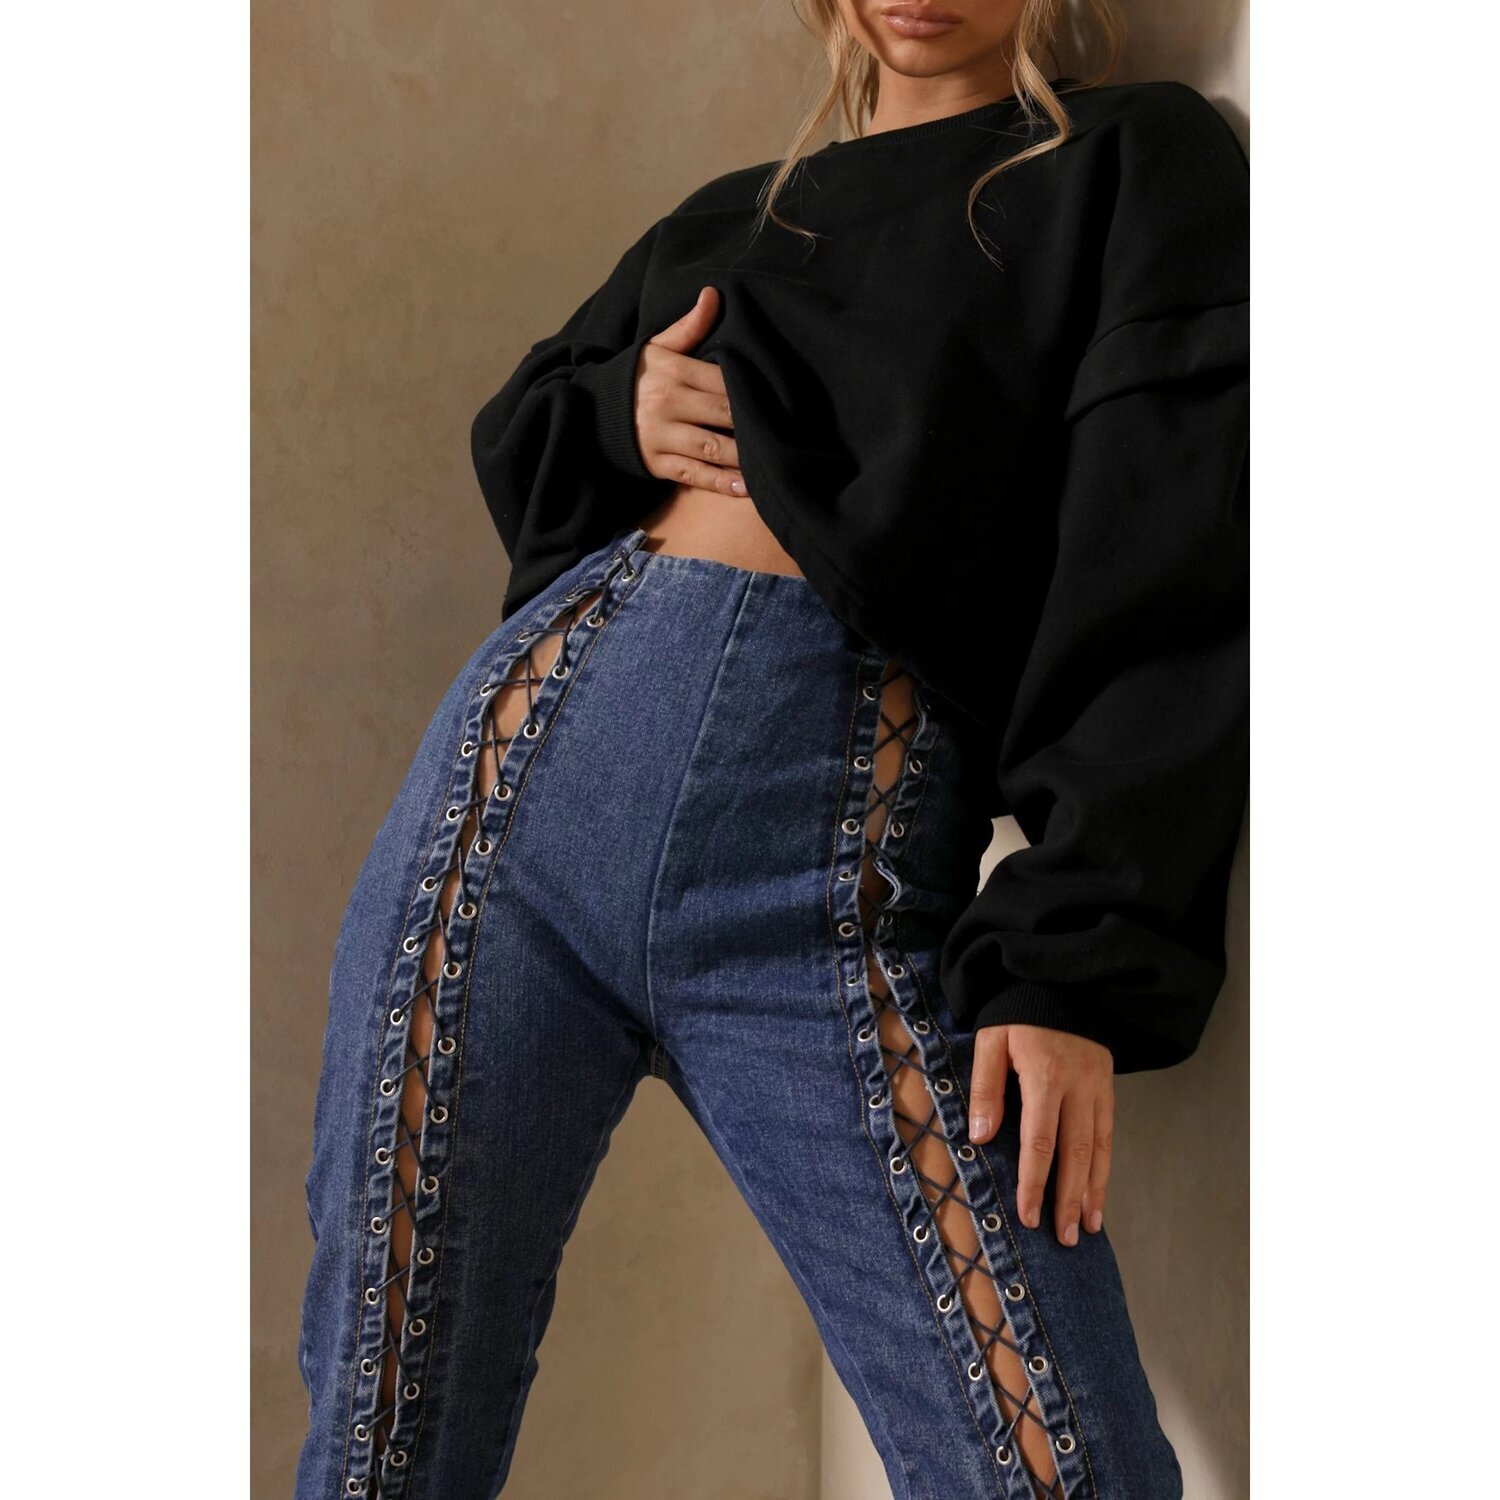 Unpublished Lace-Up Dark Wash Jeans — Soho Style Boutique